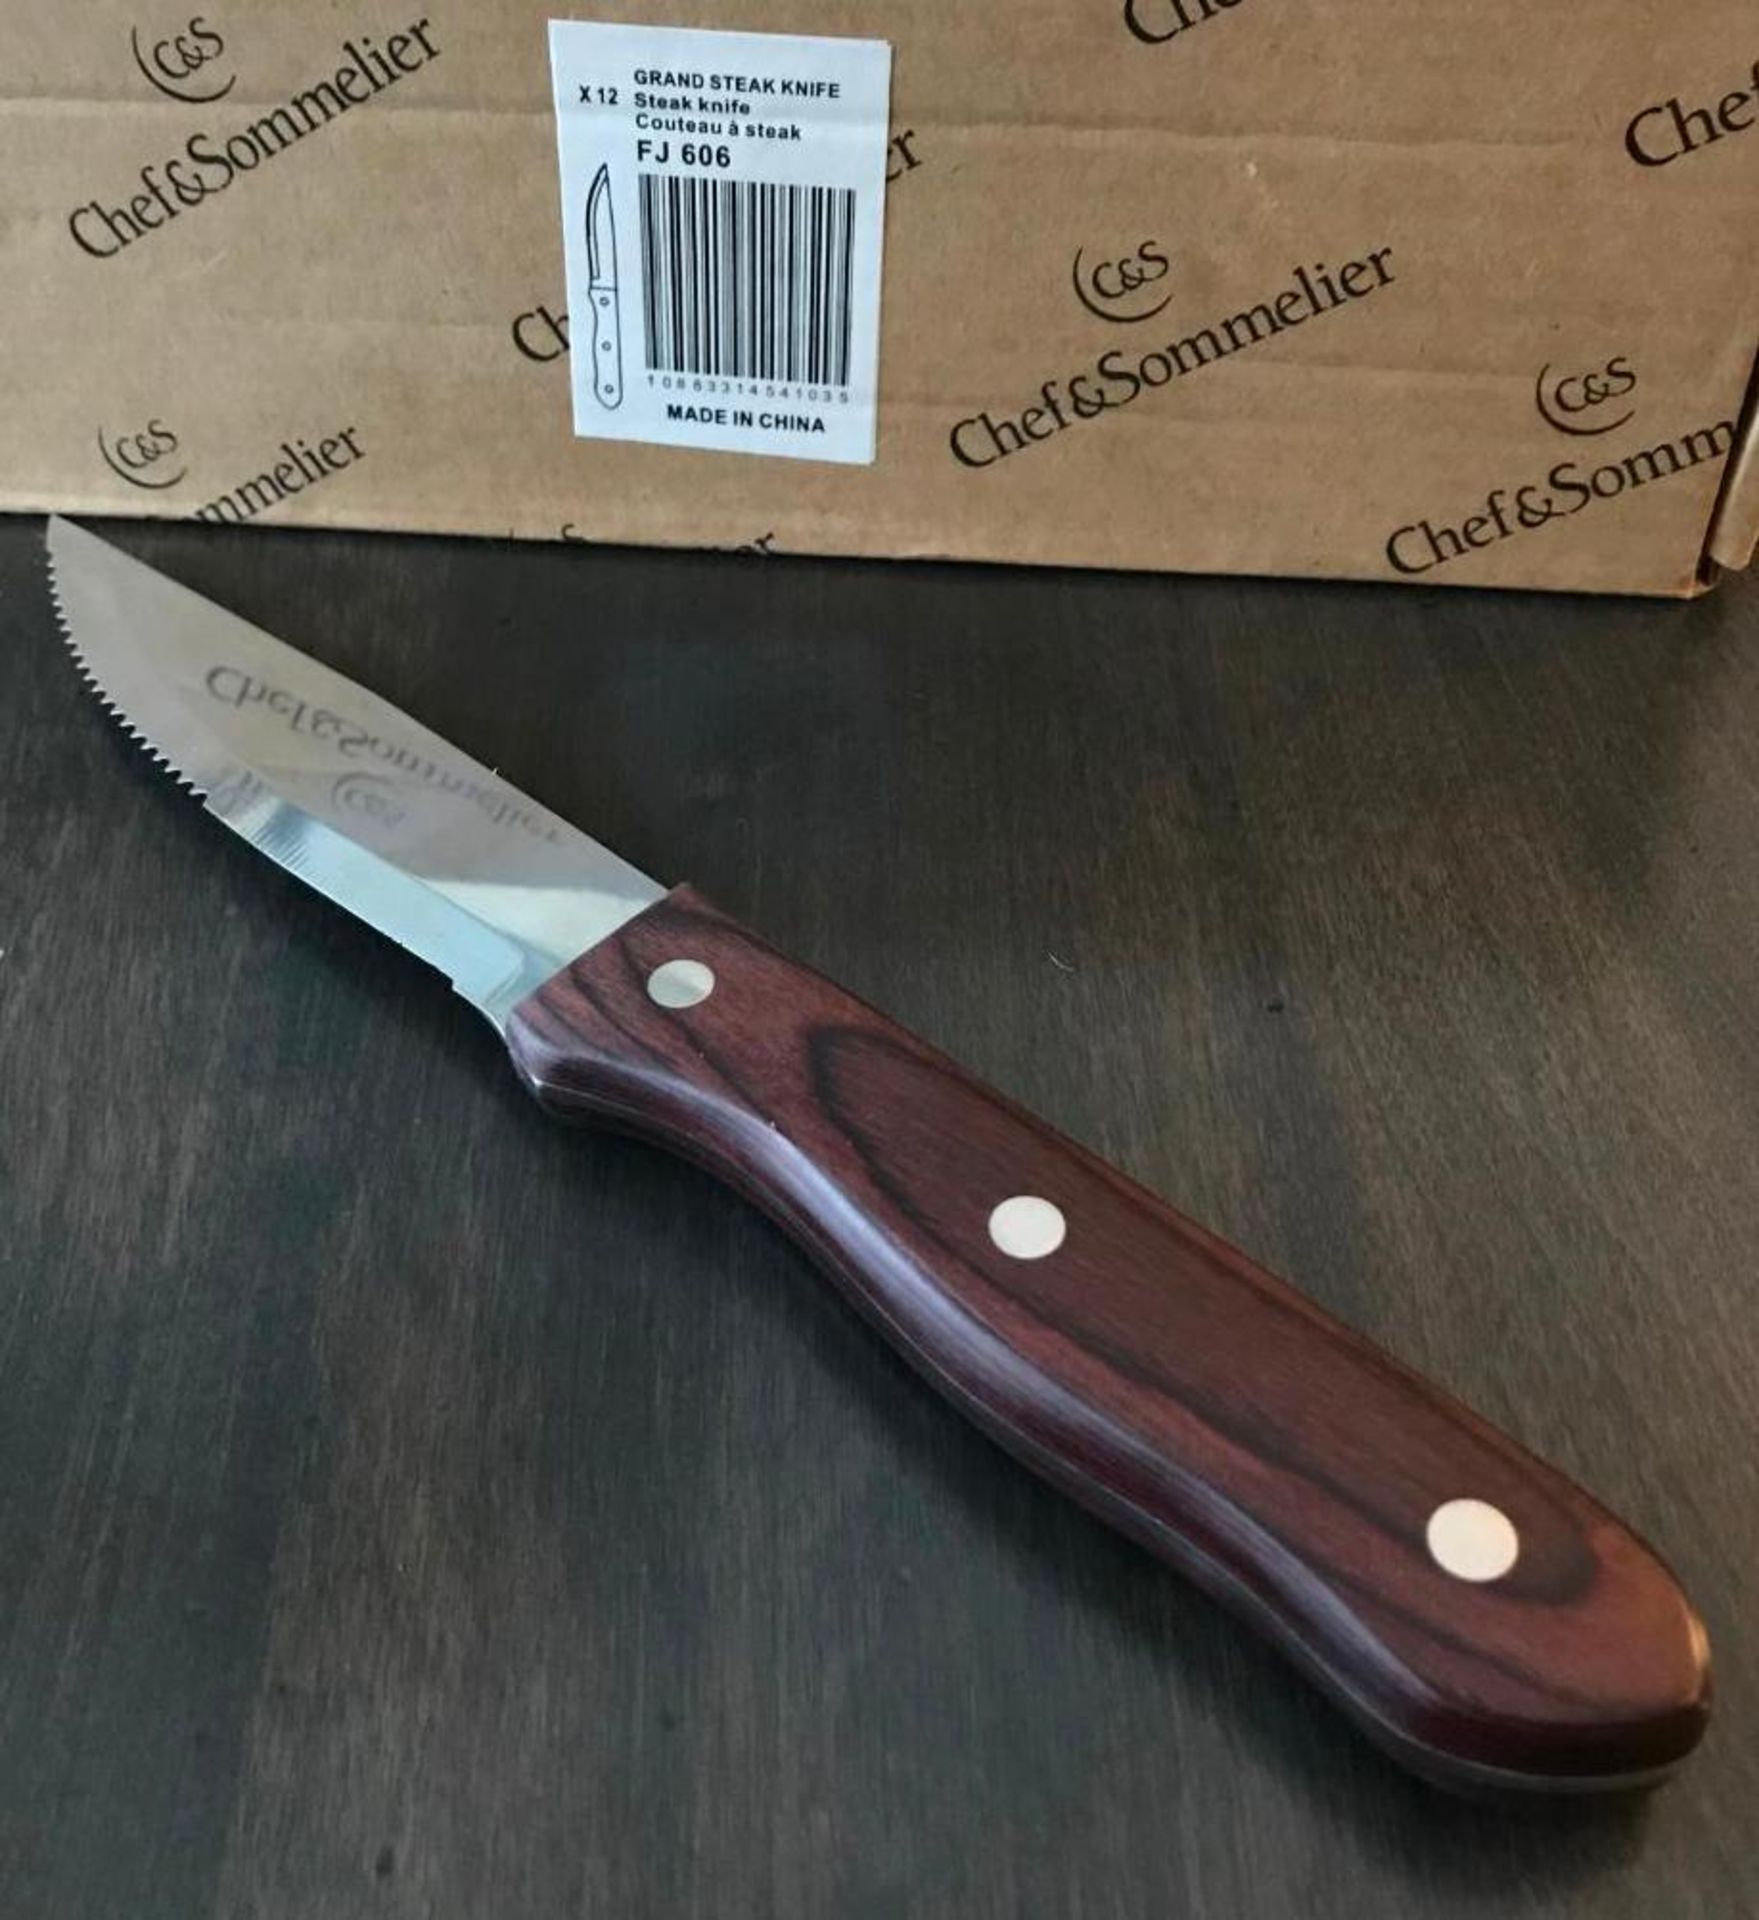 CHEF & SOMMELIER FJ606 GRAND 9" STEAK KNIFE - 12/CASE - NEW - Image 2 of 8